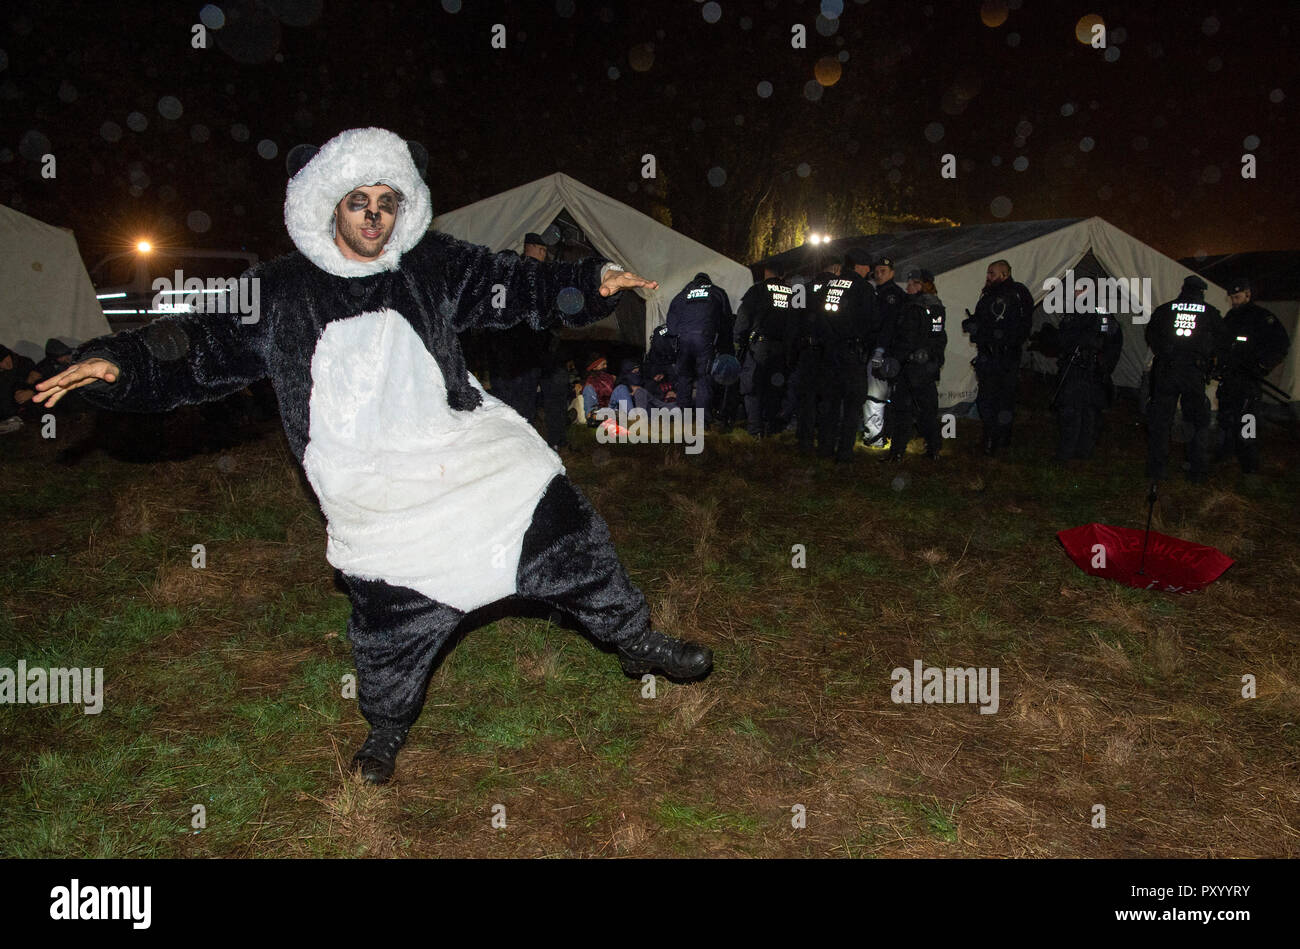 Kerpen Manheim Allemagne 24 Oct 18 Un Militant Avec Un Panda Costume Danse Alors Que Le Camp Des Militants De L Action Alliance Ende Gelande Est Effacee La Police A Commence Tard Mercredi